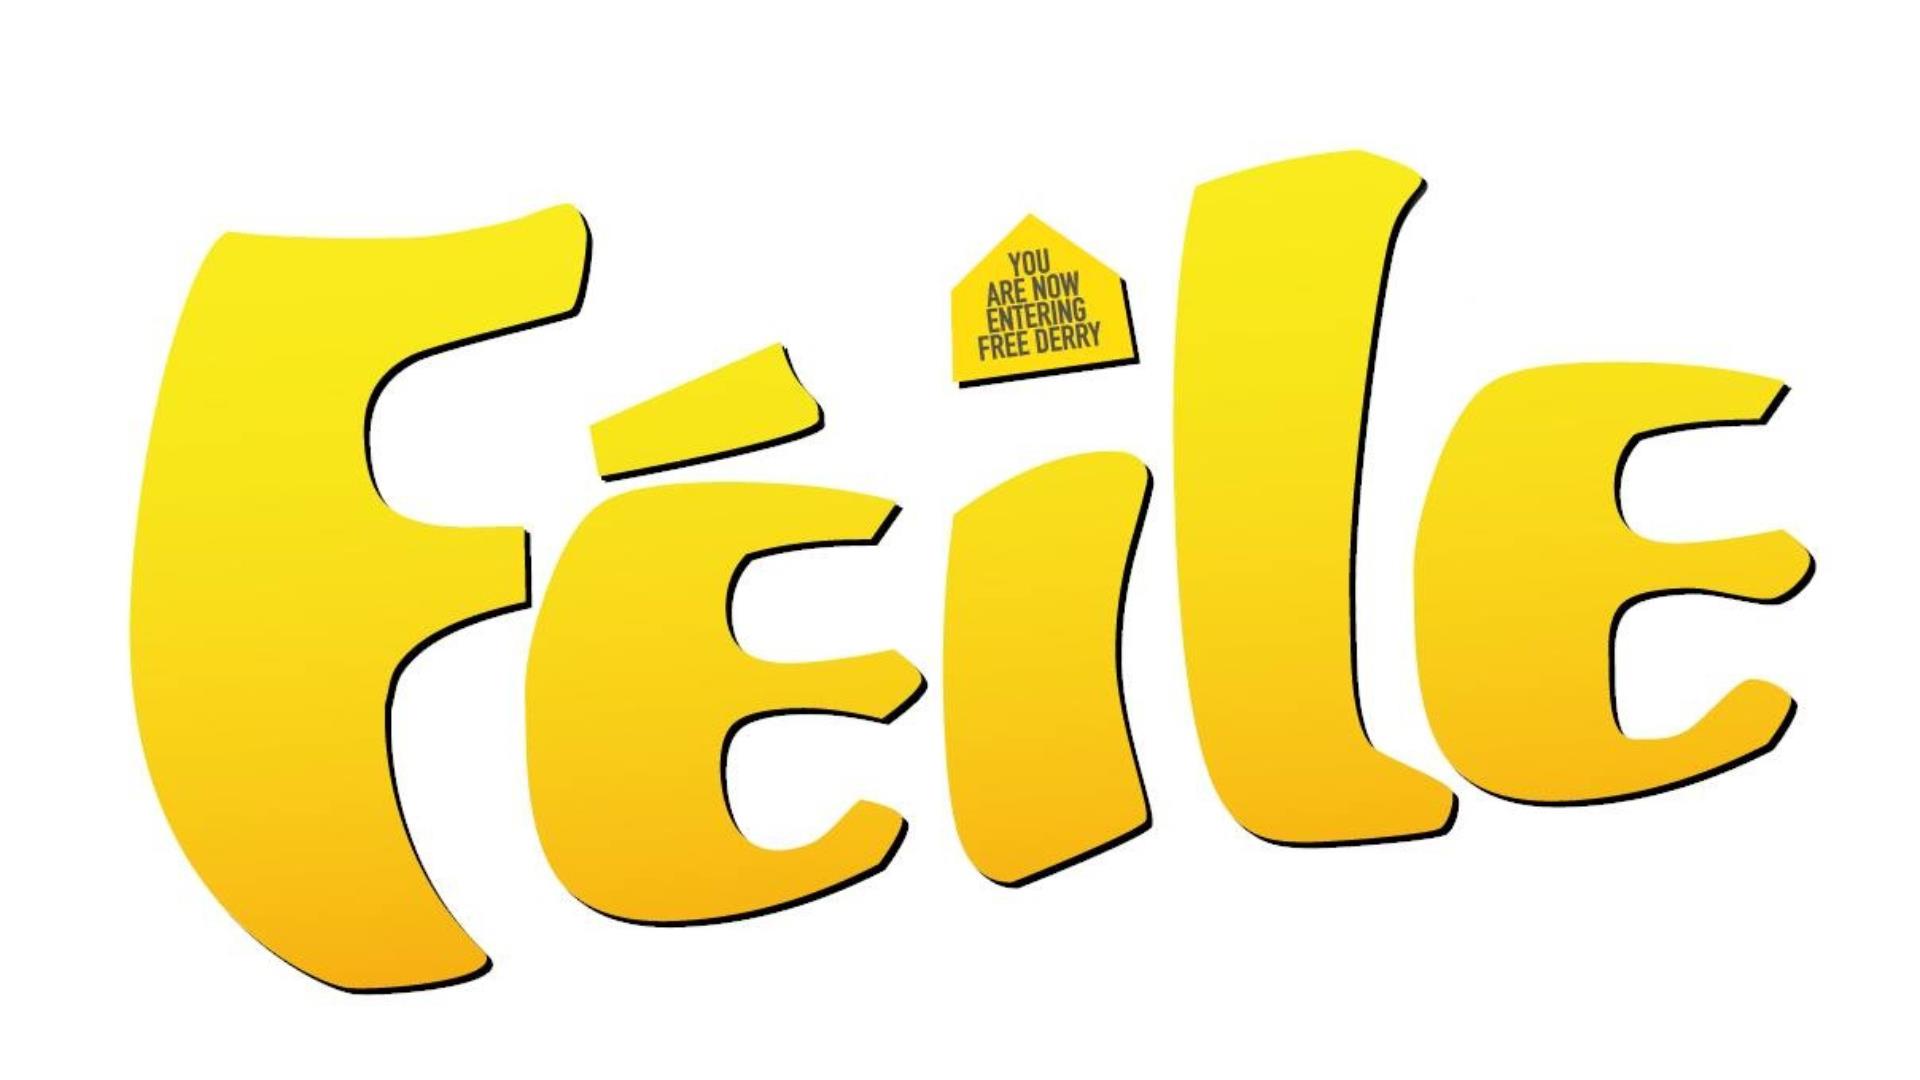 The logo for the Féile.